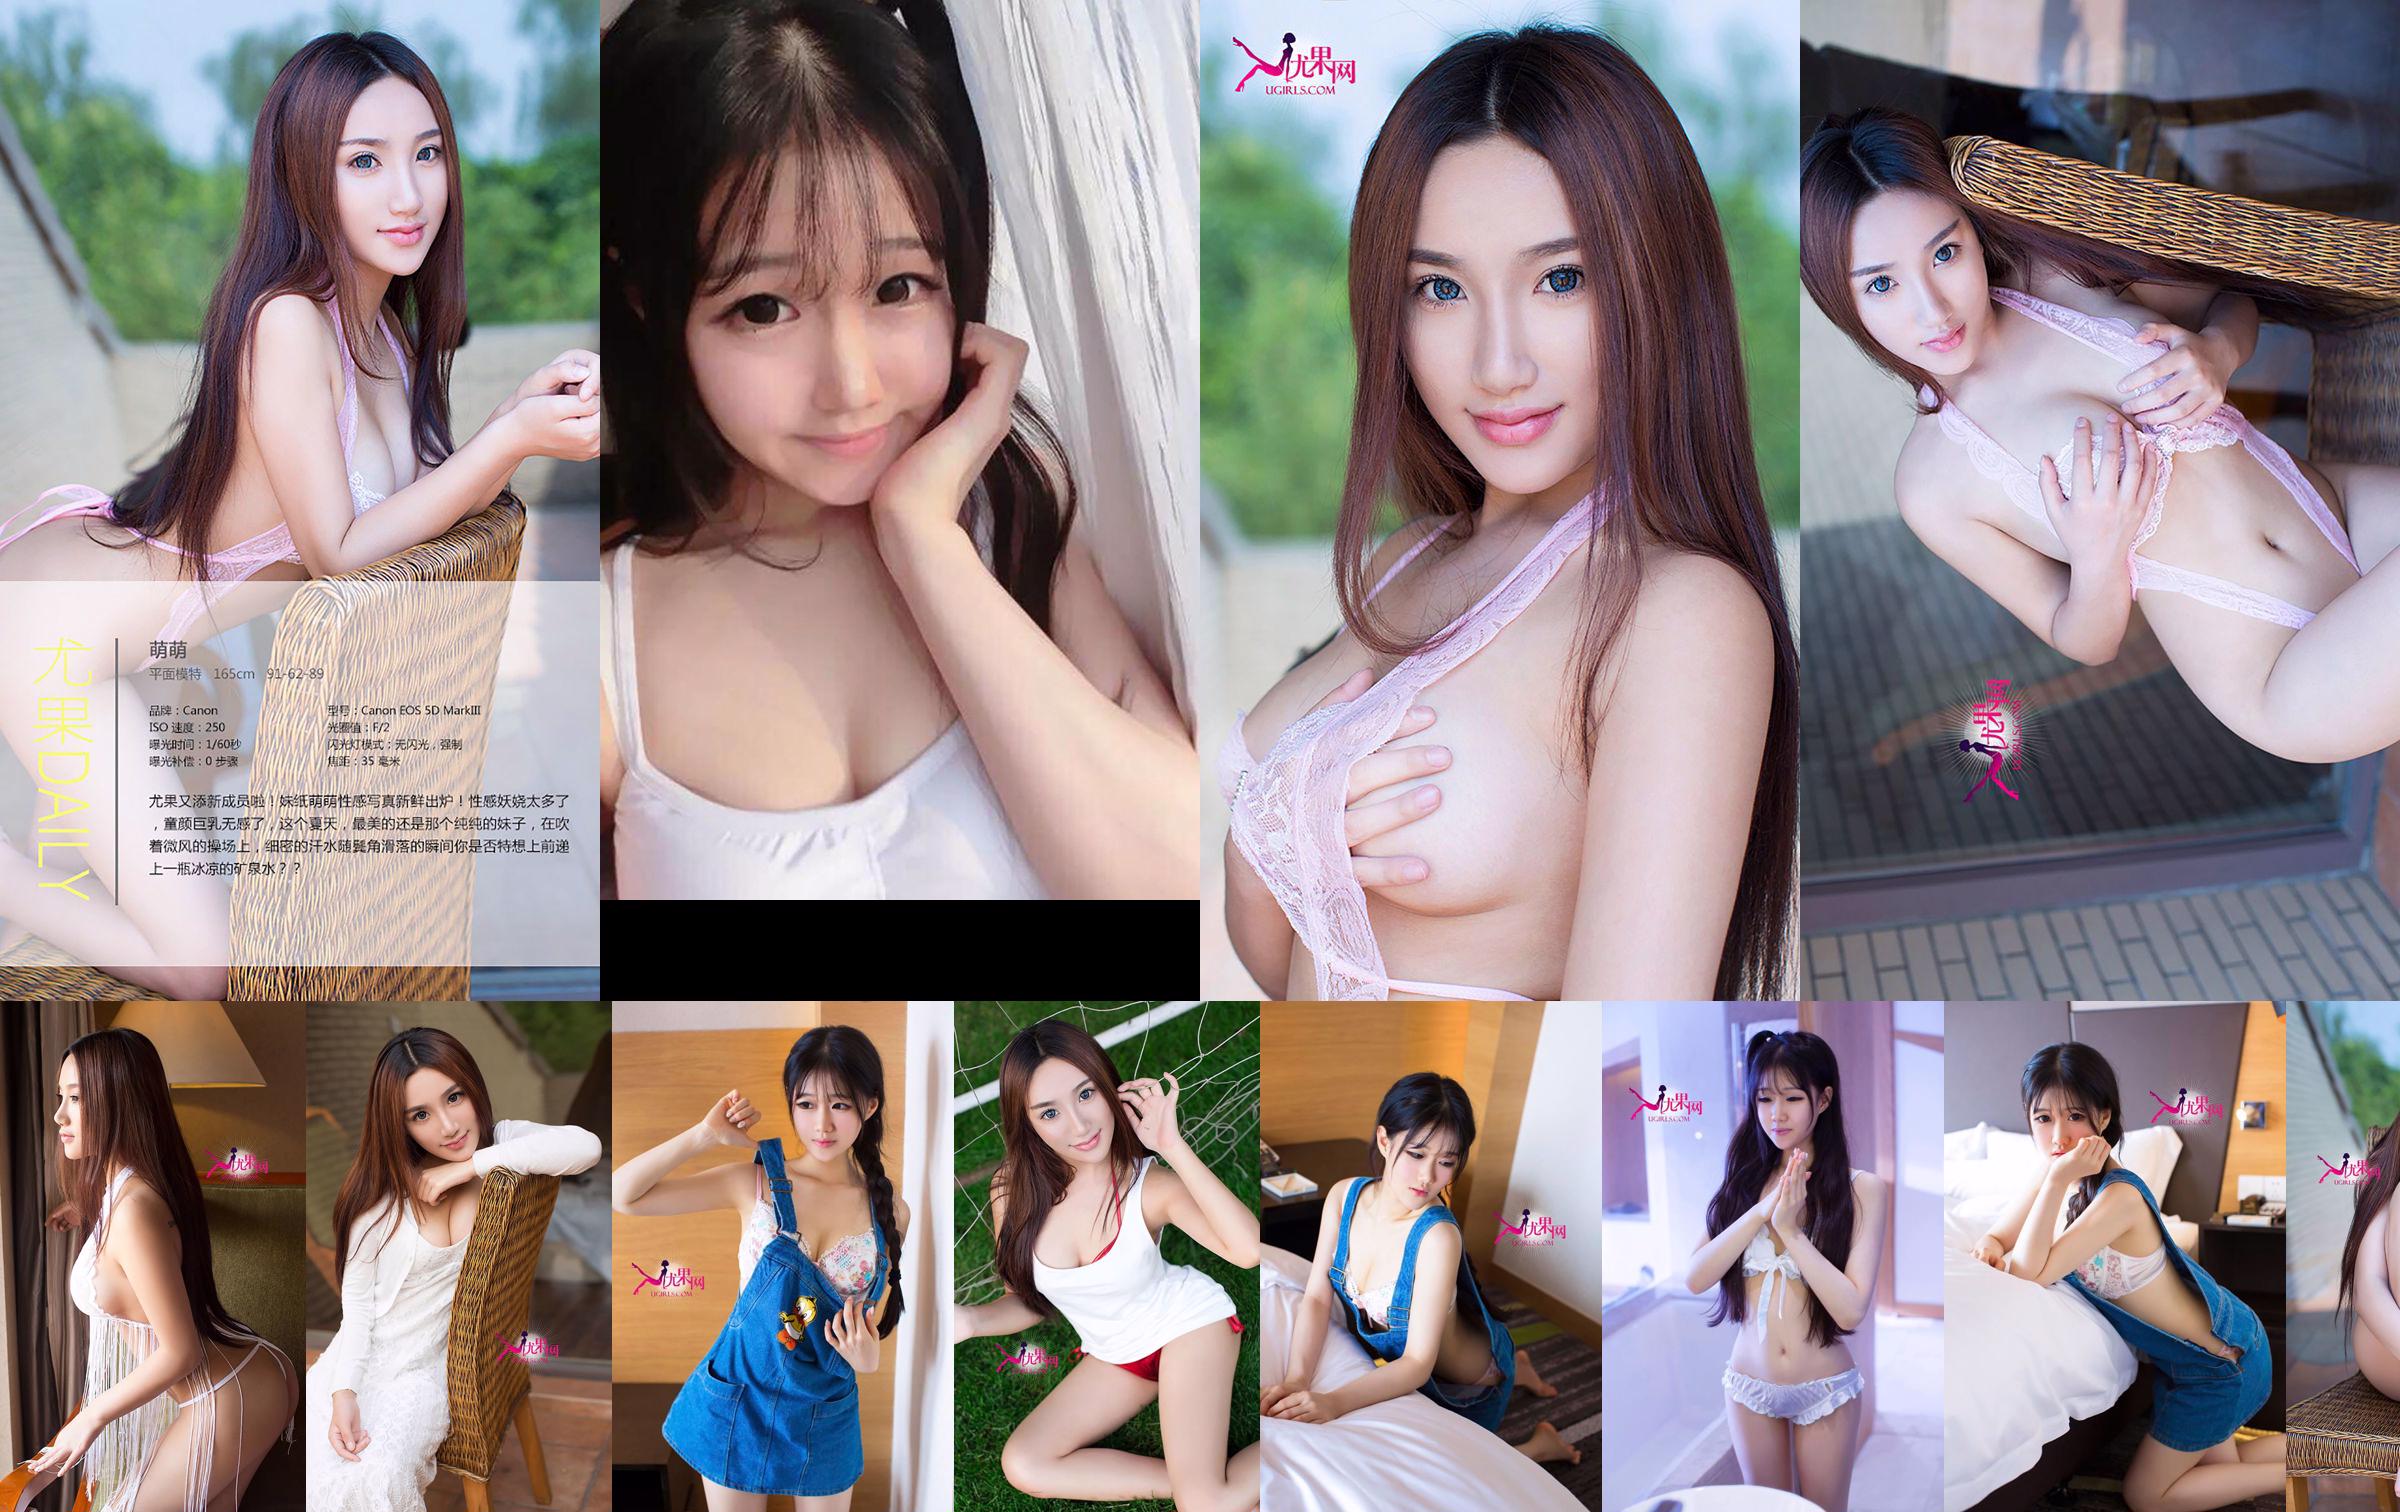 Chen Yumeng "Cô gái dễ thương vô hại và khơi dậy tình yêu" [Ugirls] No.098 No.7968ff Trang 5